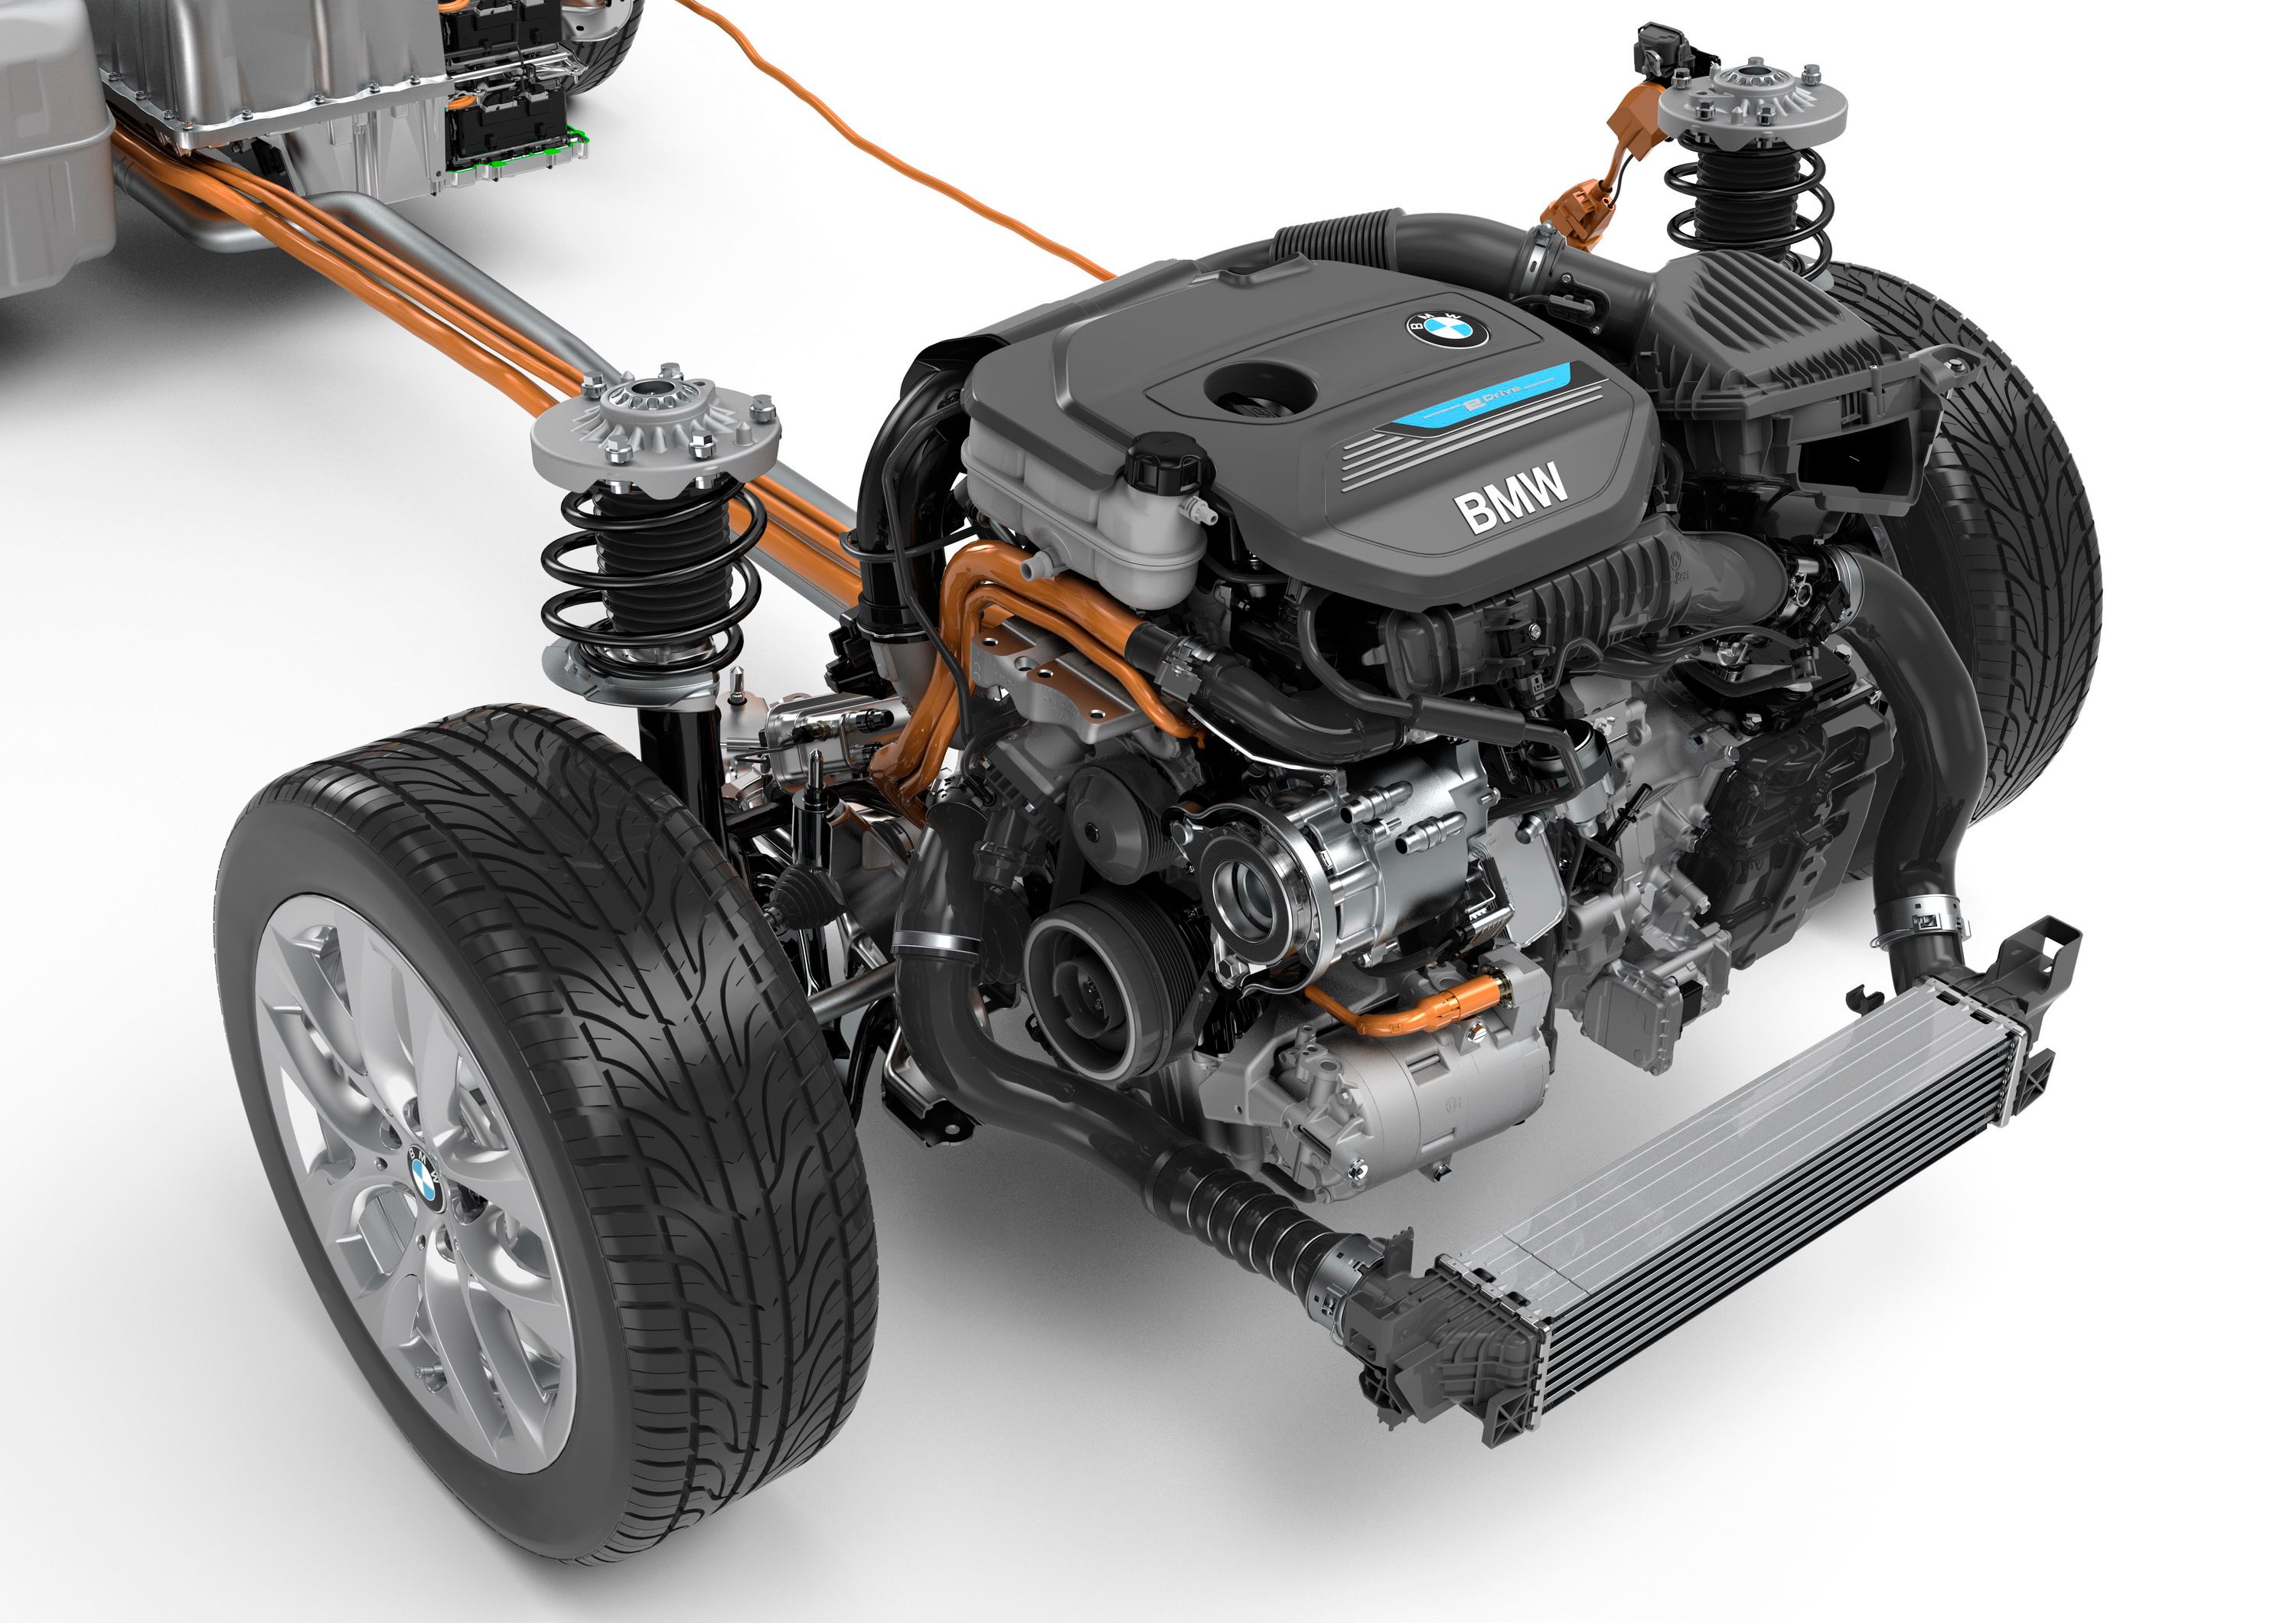 2016 BMW 225xe Plug-in Hybrid